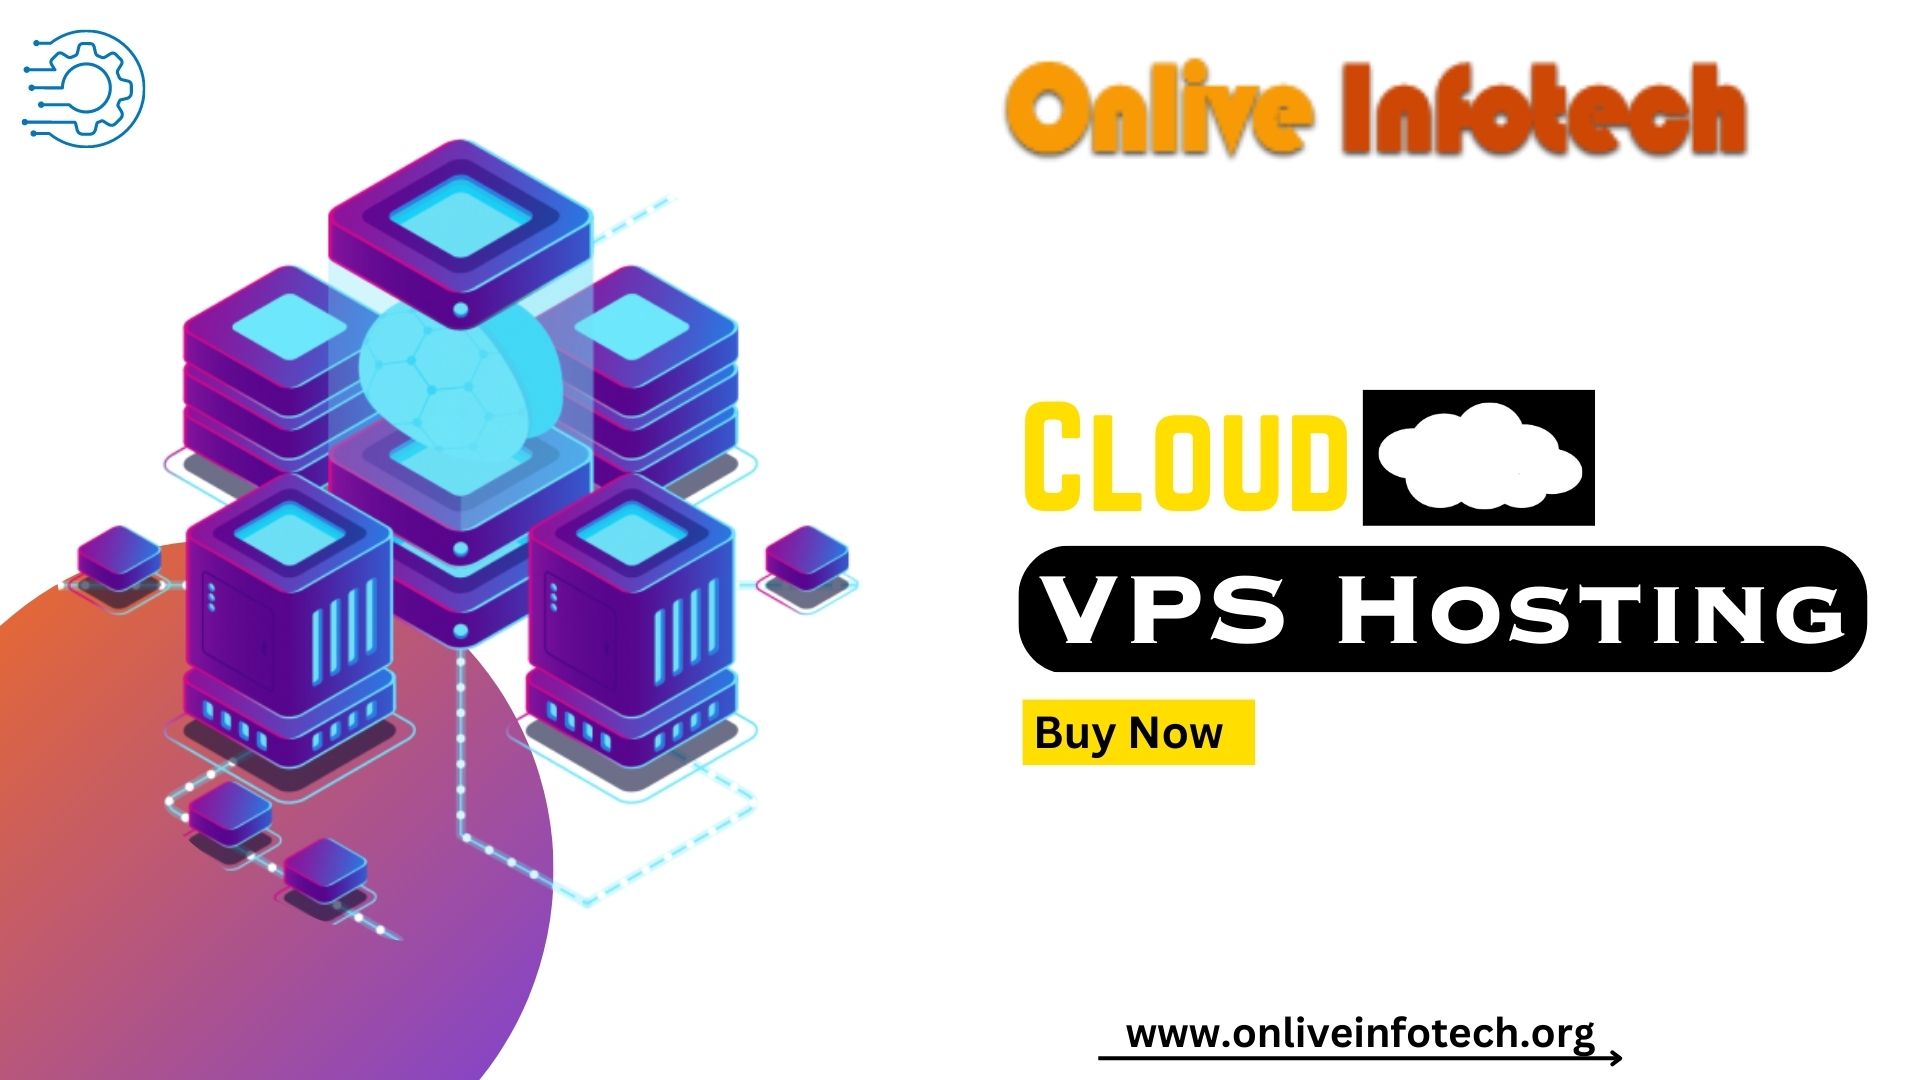 Cloud VPS Hosting